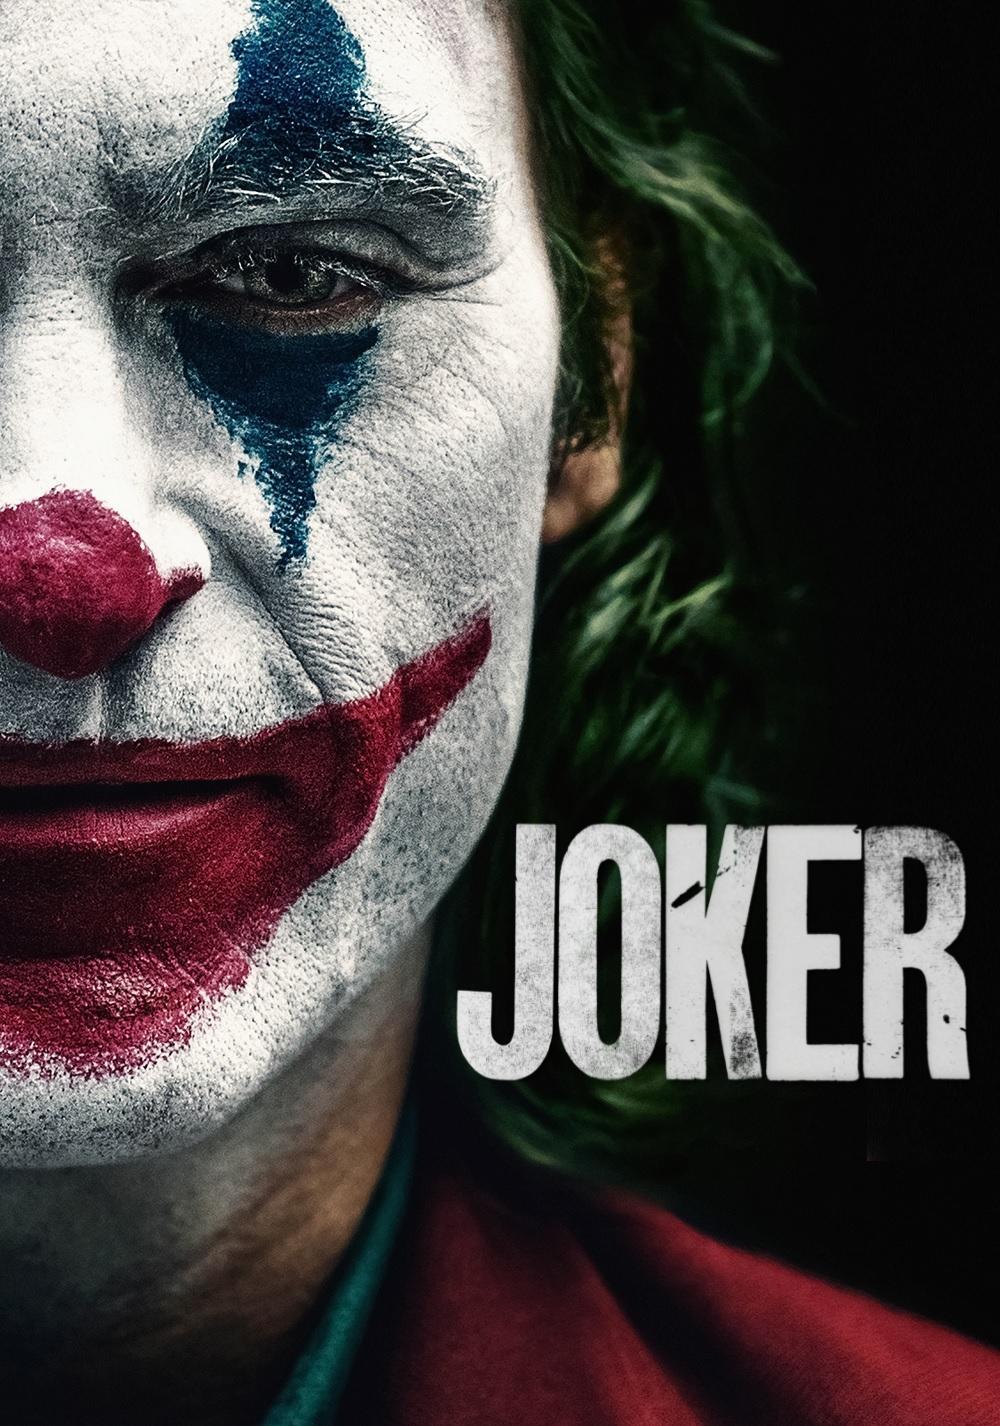 Poster Joker